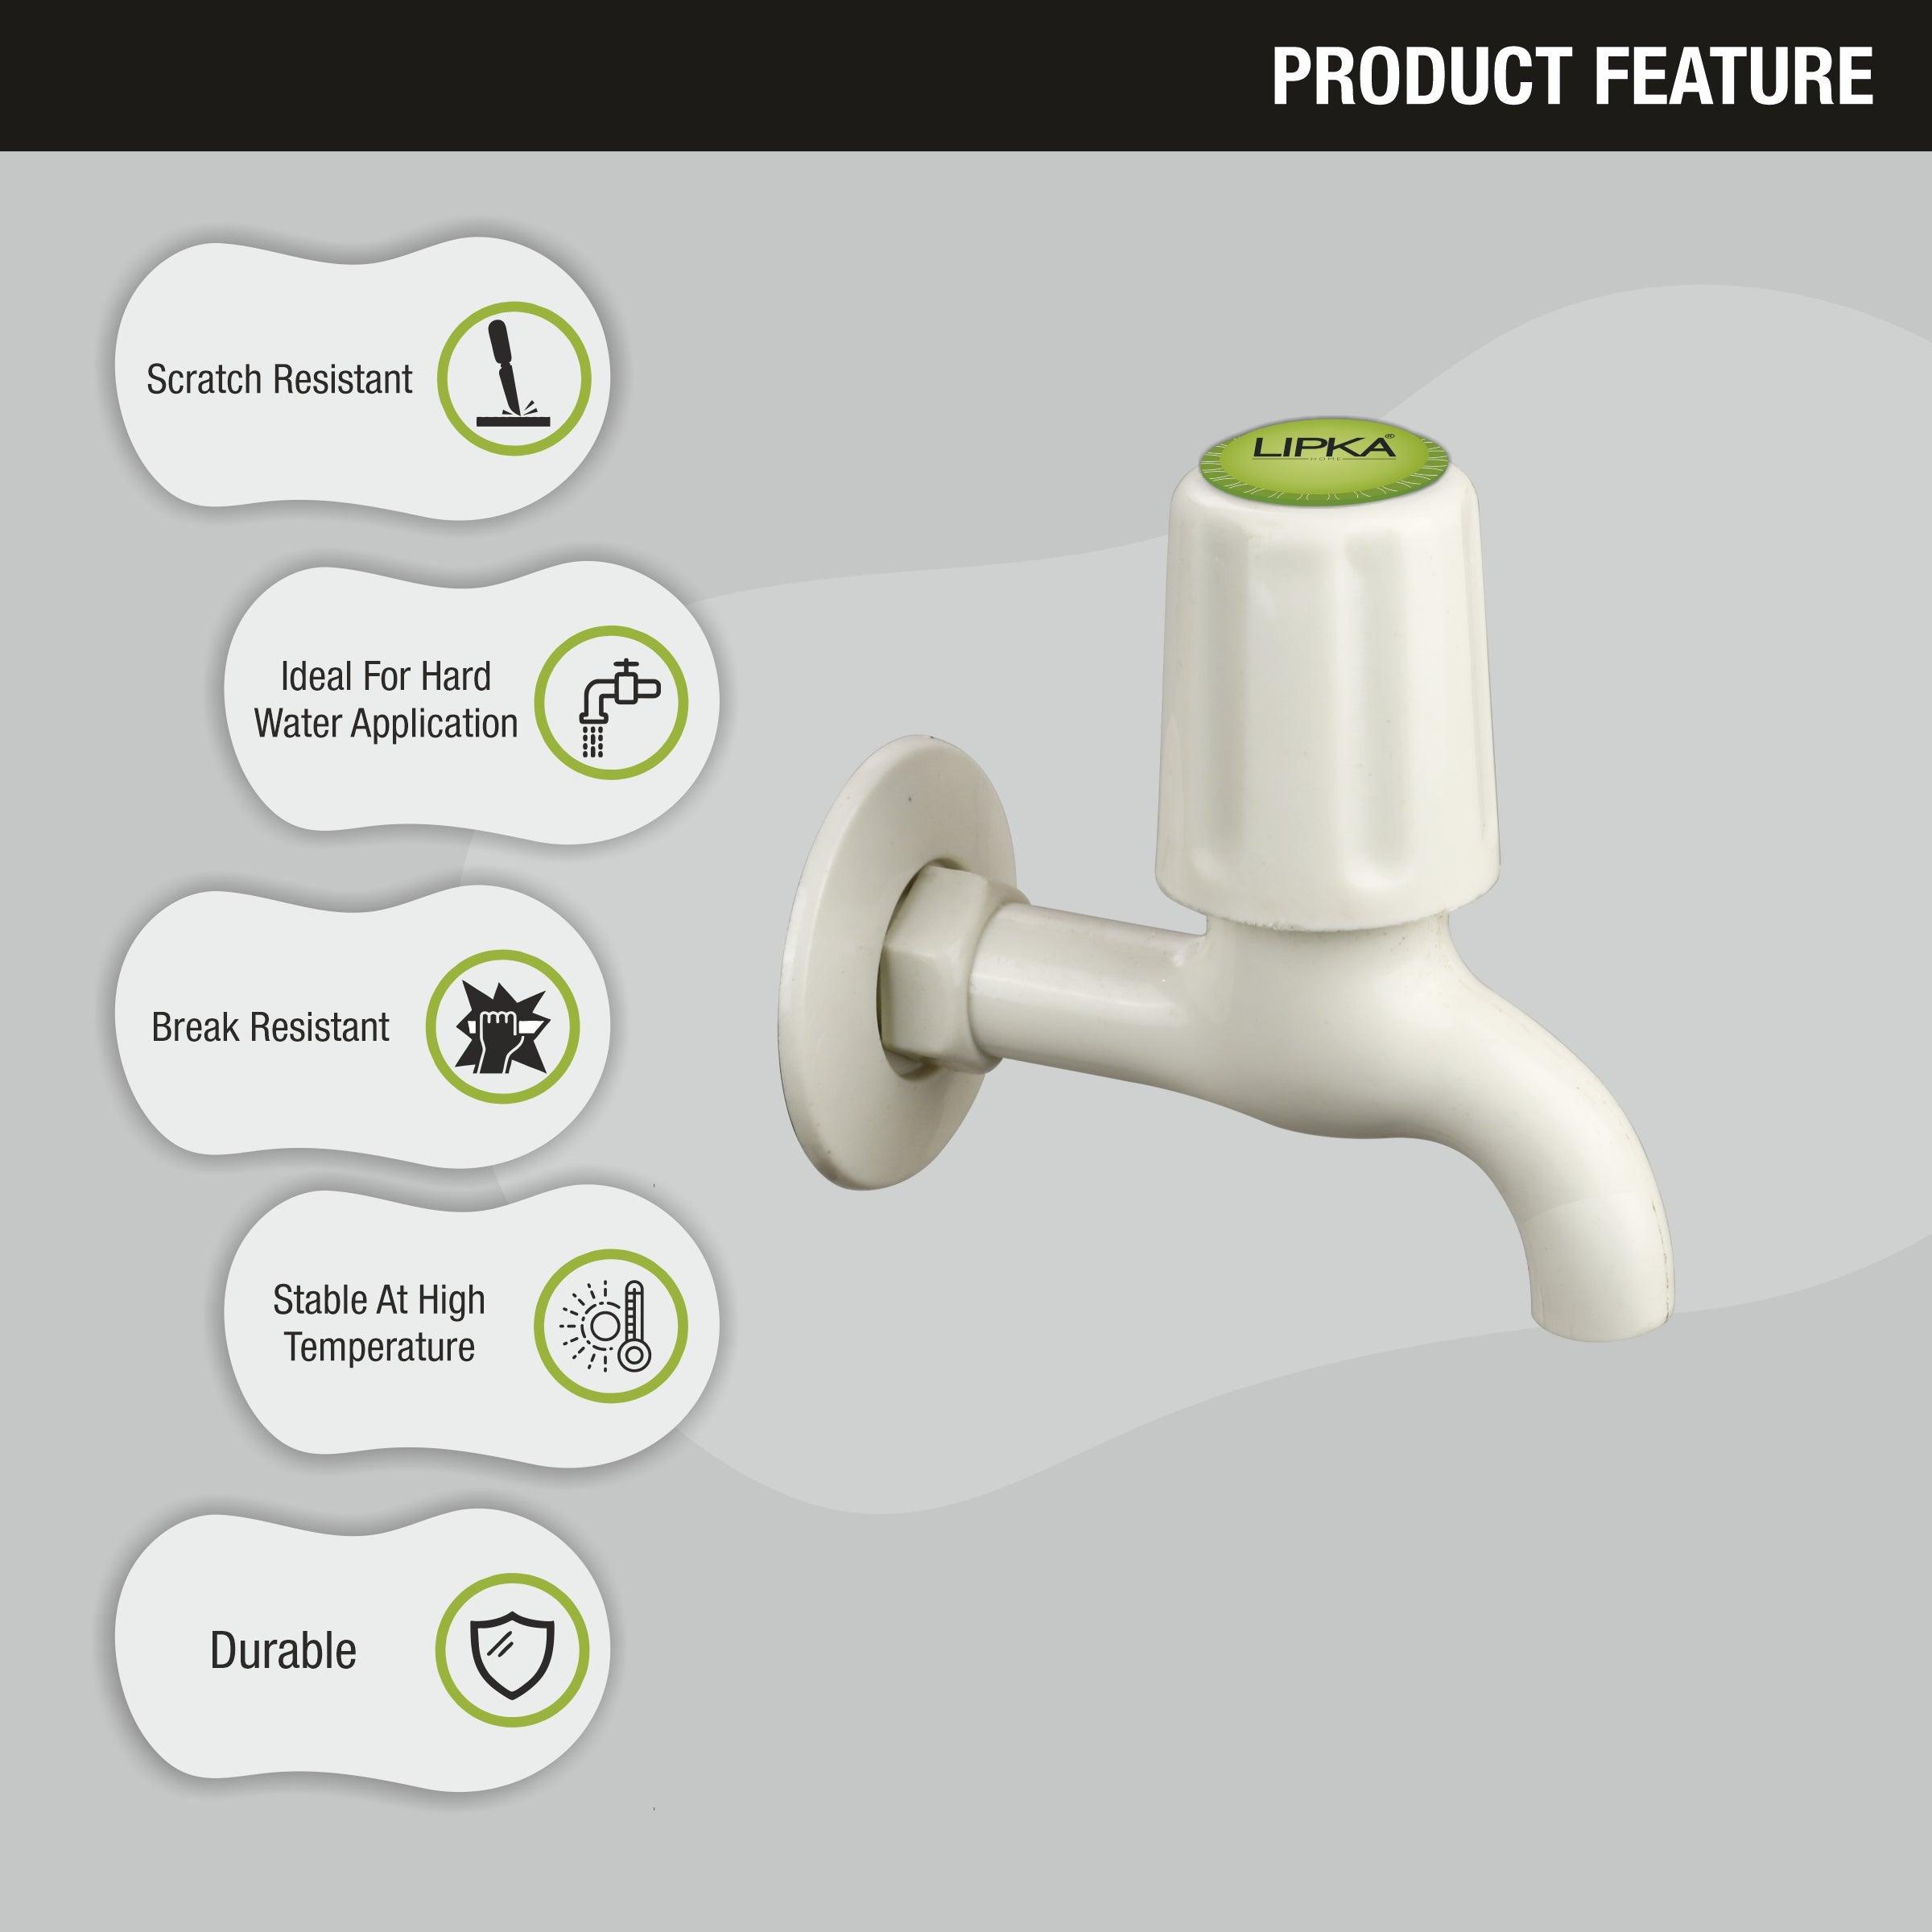 Royal Bib Tap PTMT Faucet features